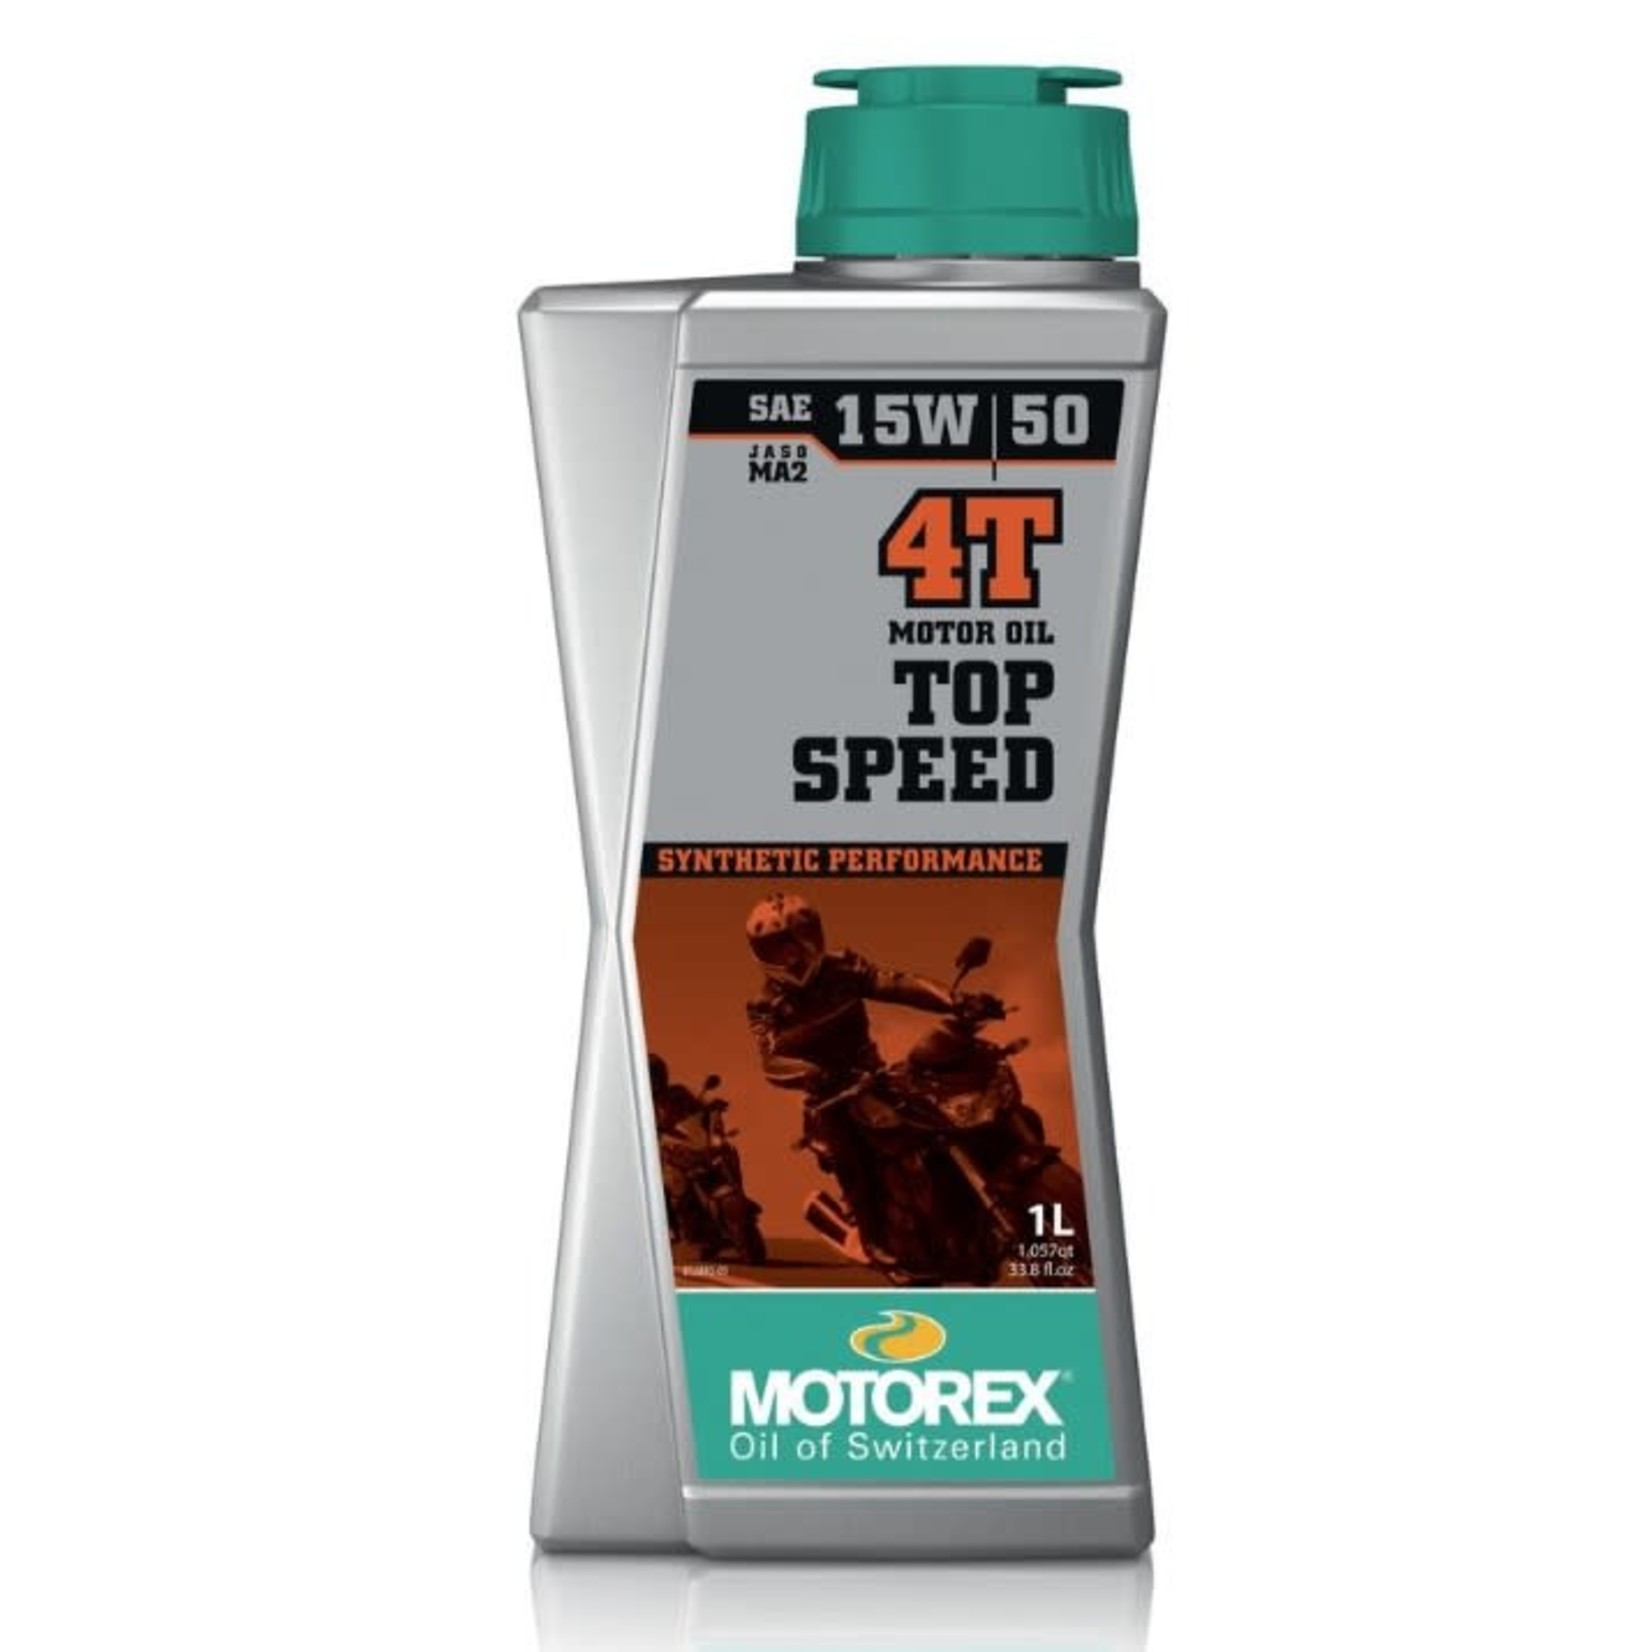 MOTOREX MOTOREX- Top Speed Motor Oil 4T 15w50